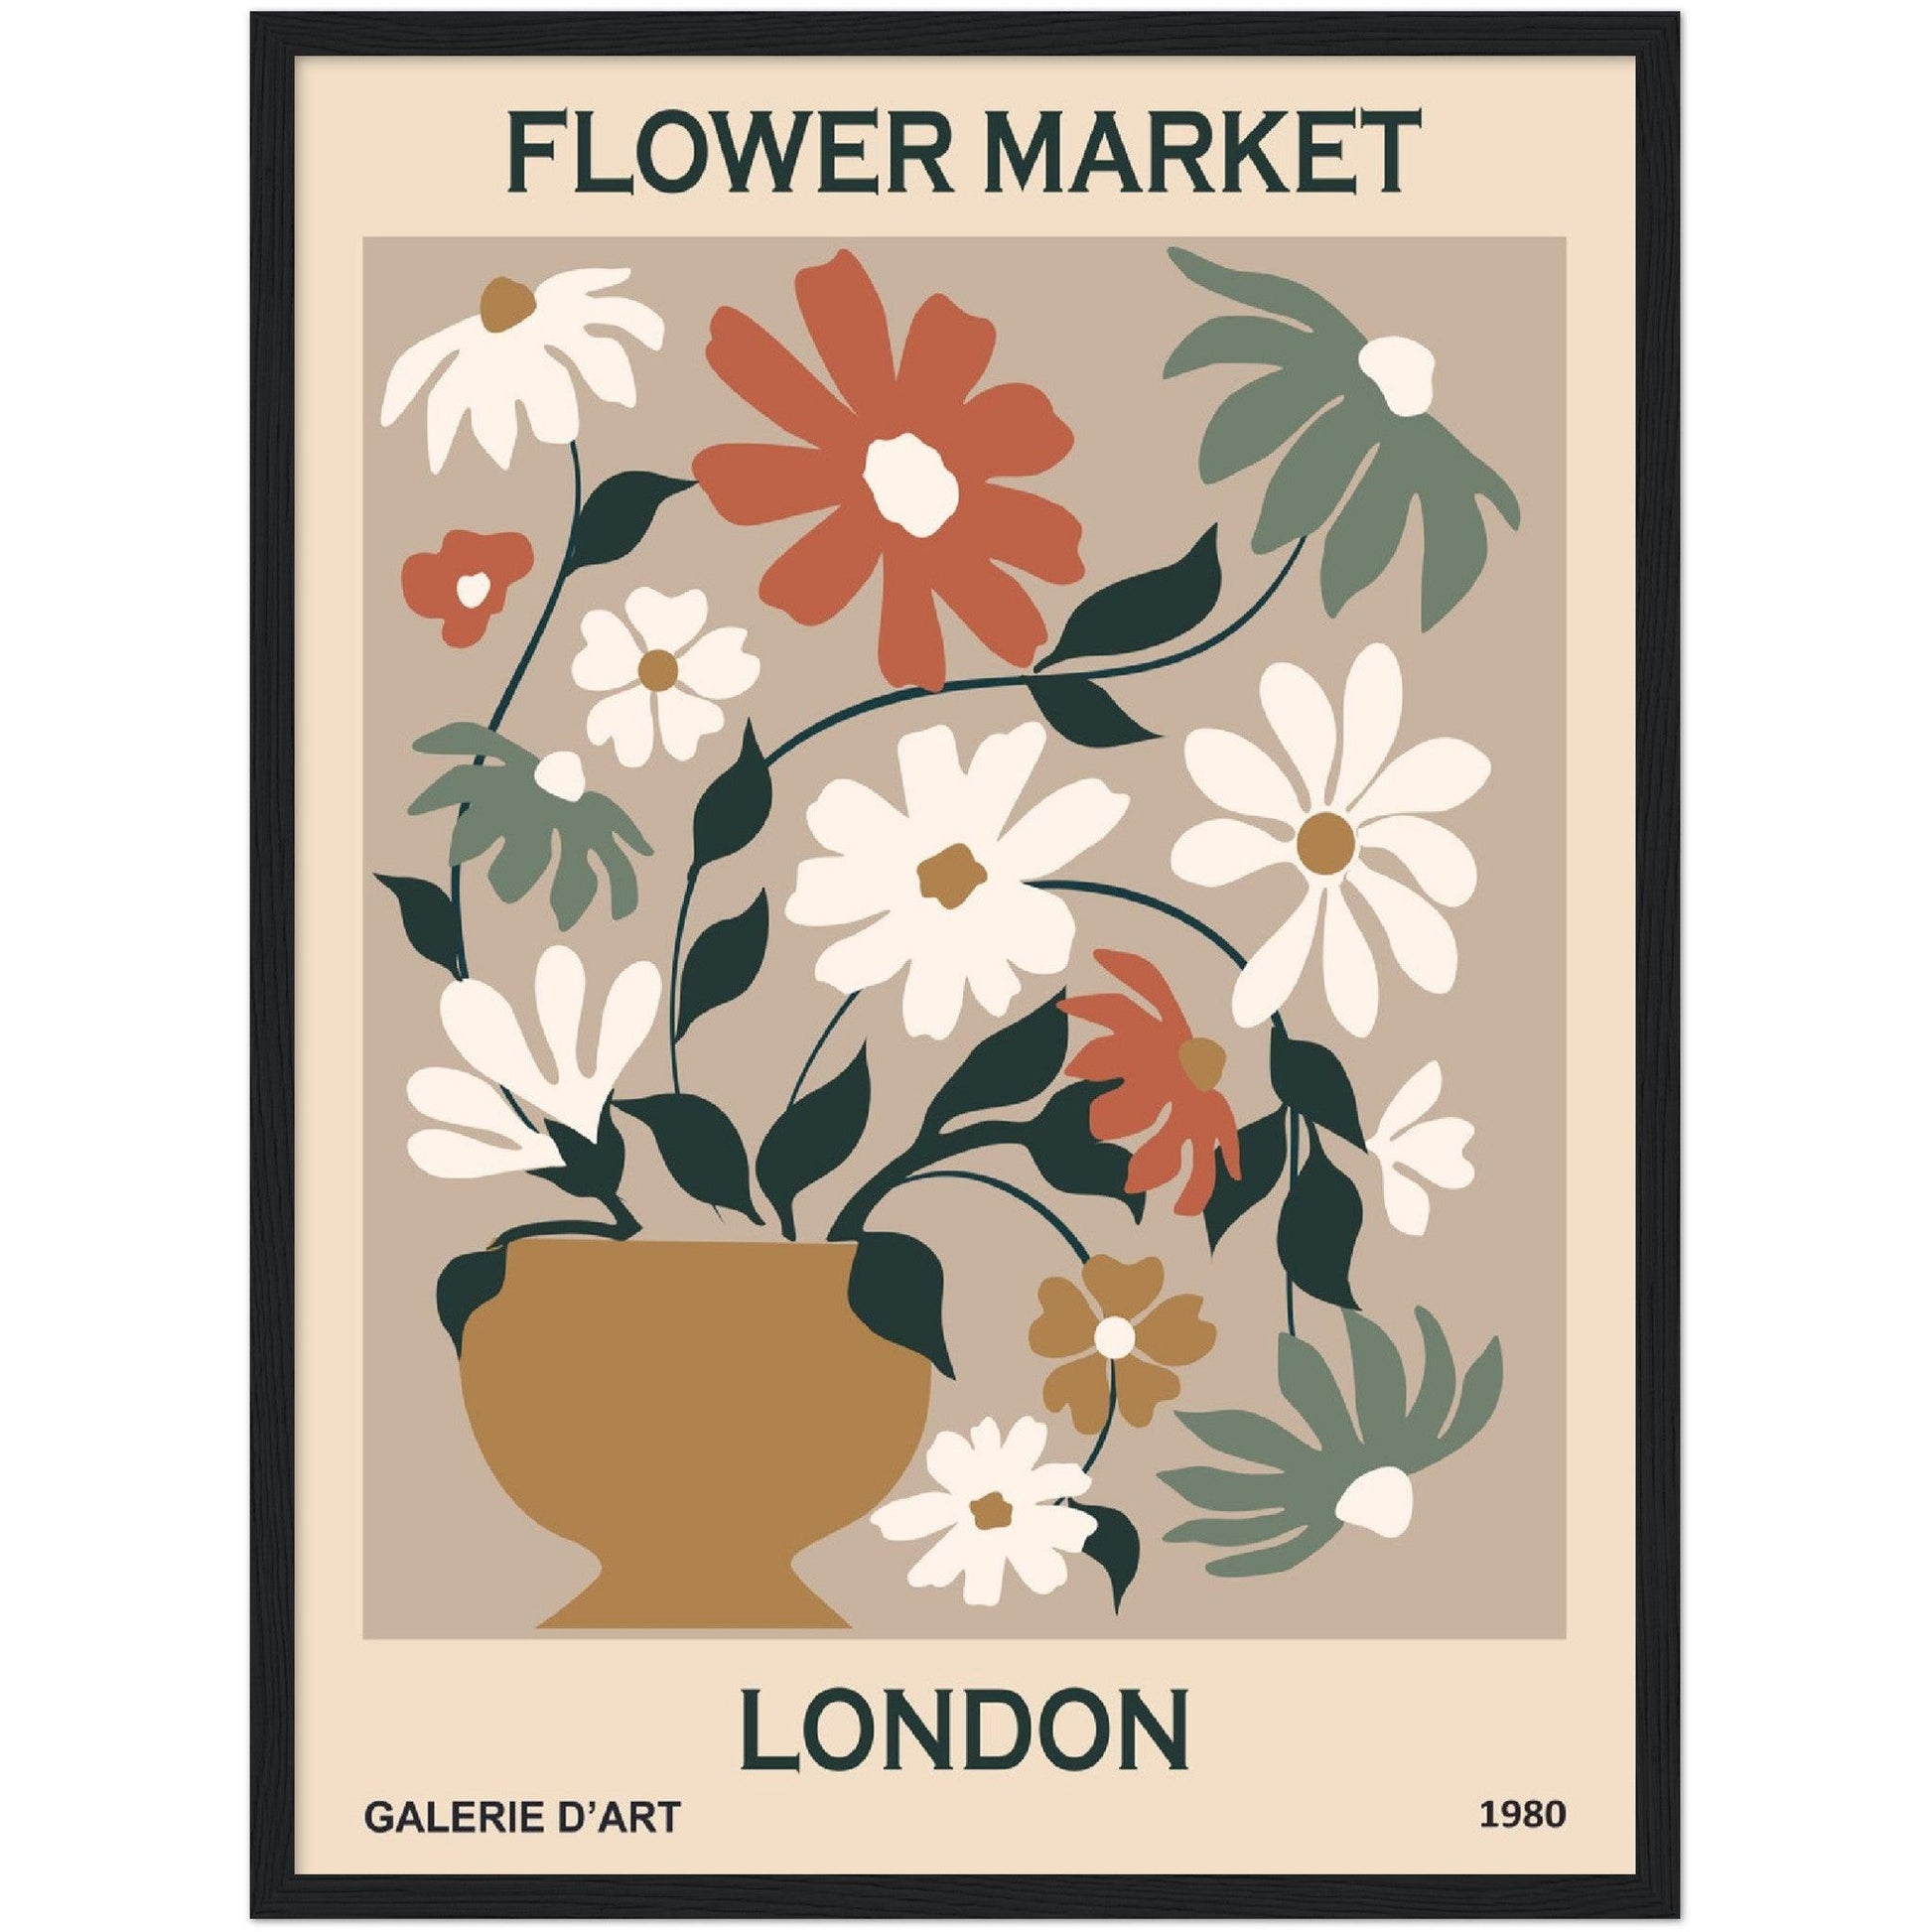 Flower Market in London - By Masters in Art - Masters in Art